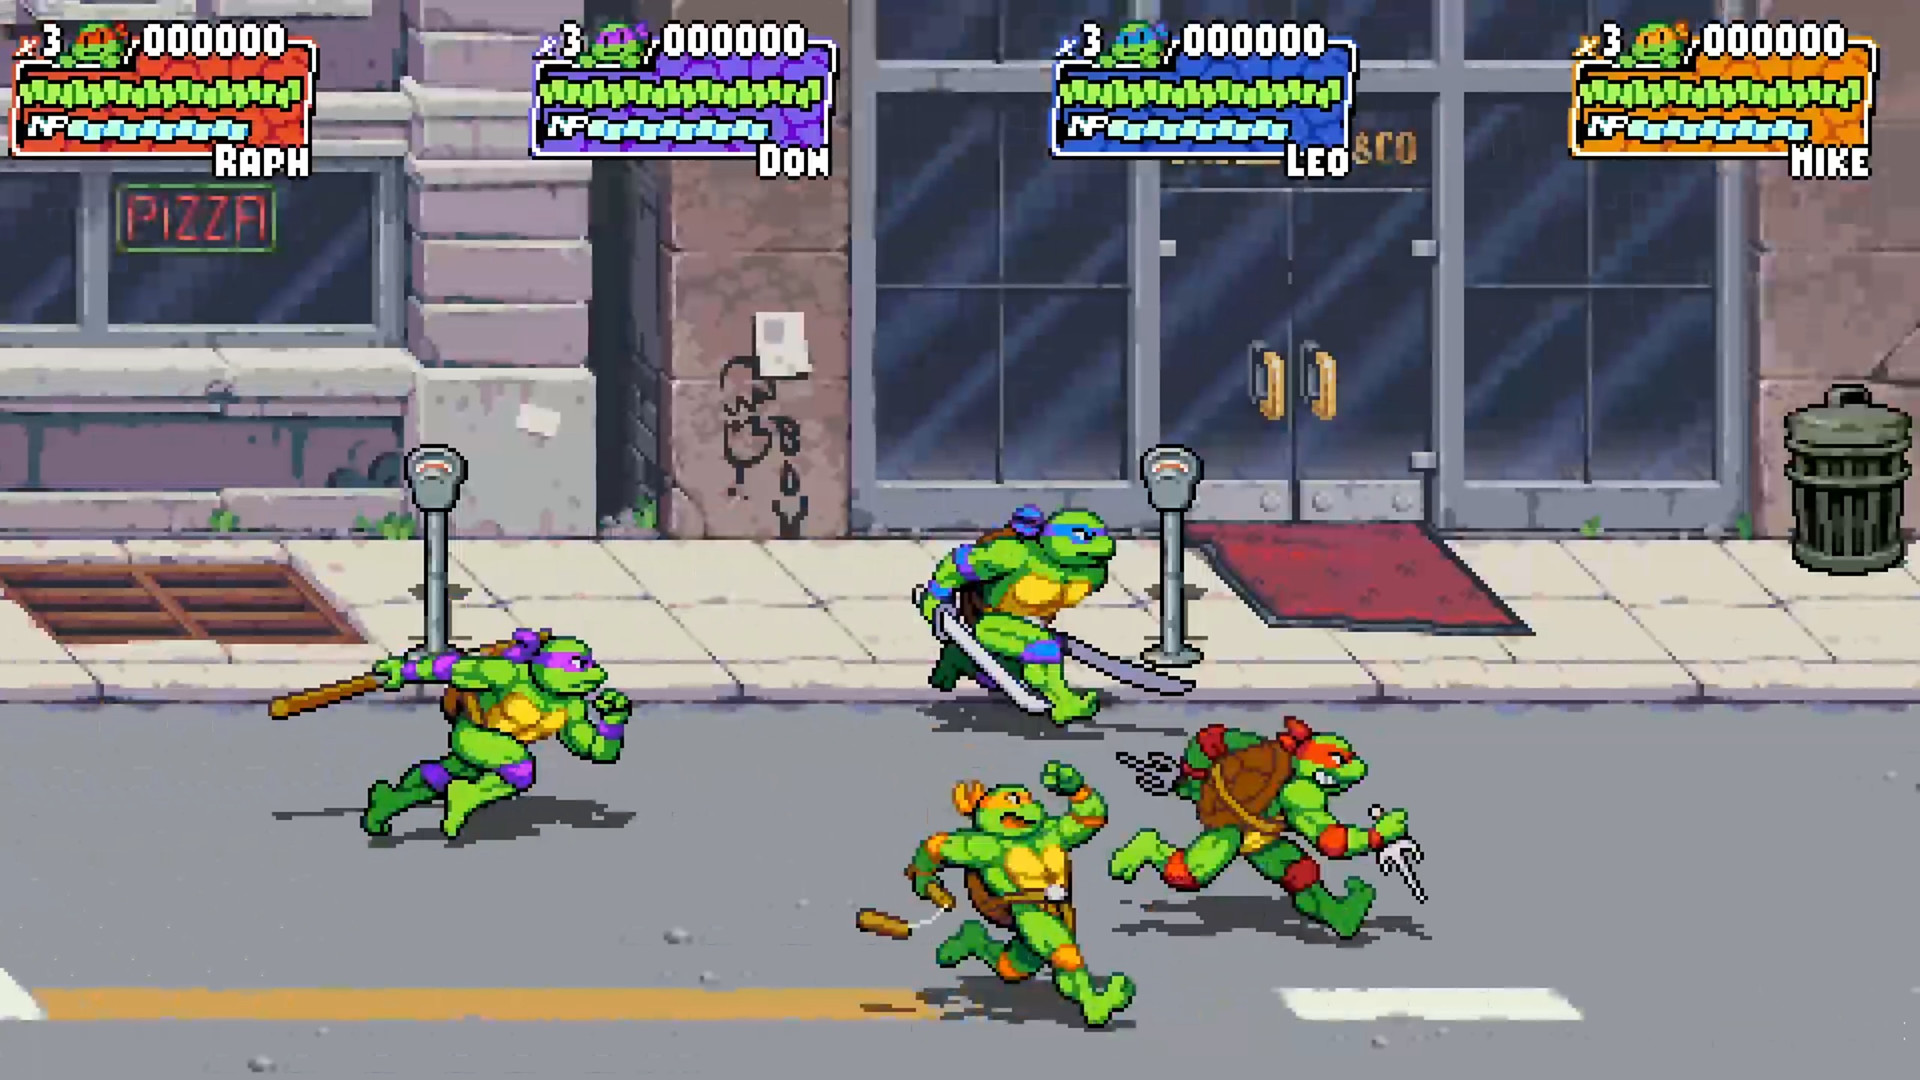 Teenage Mutant Ninja Turtles: Shredder's Revenge EU V2 Steam Altergift